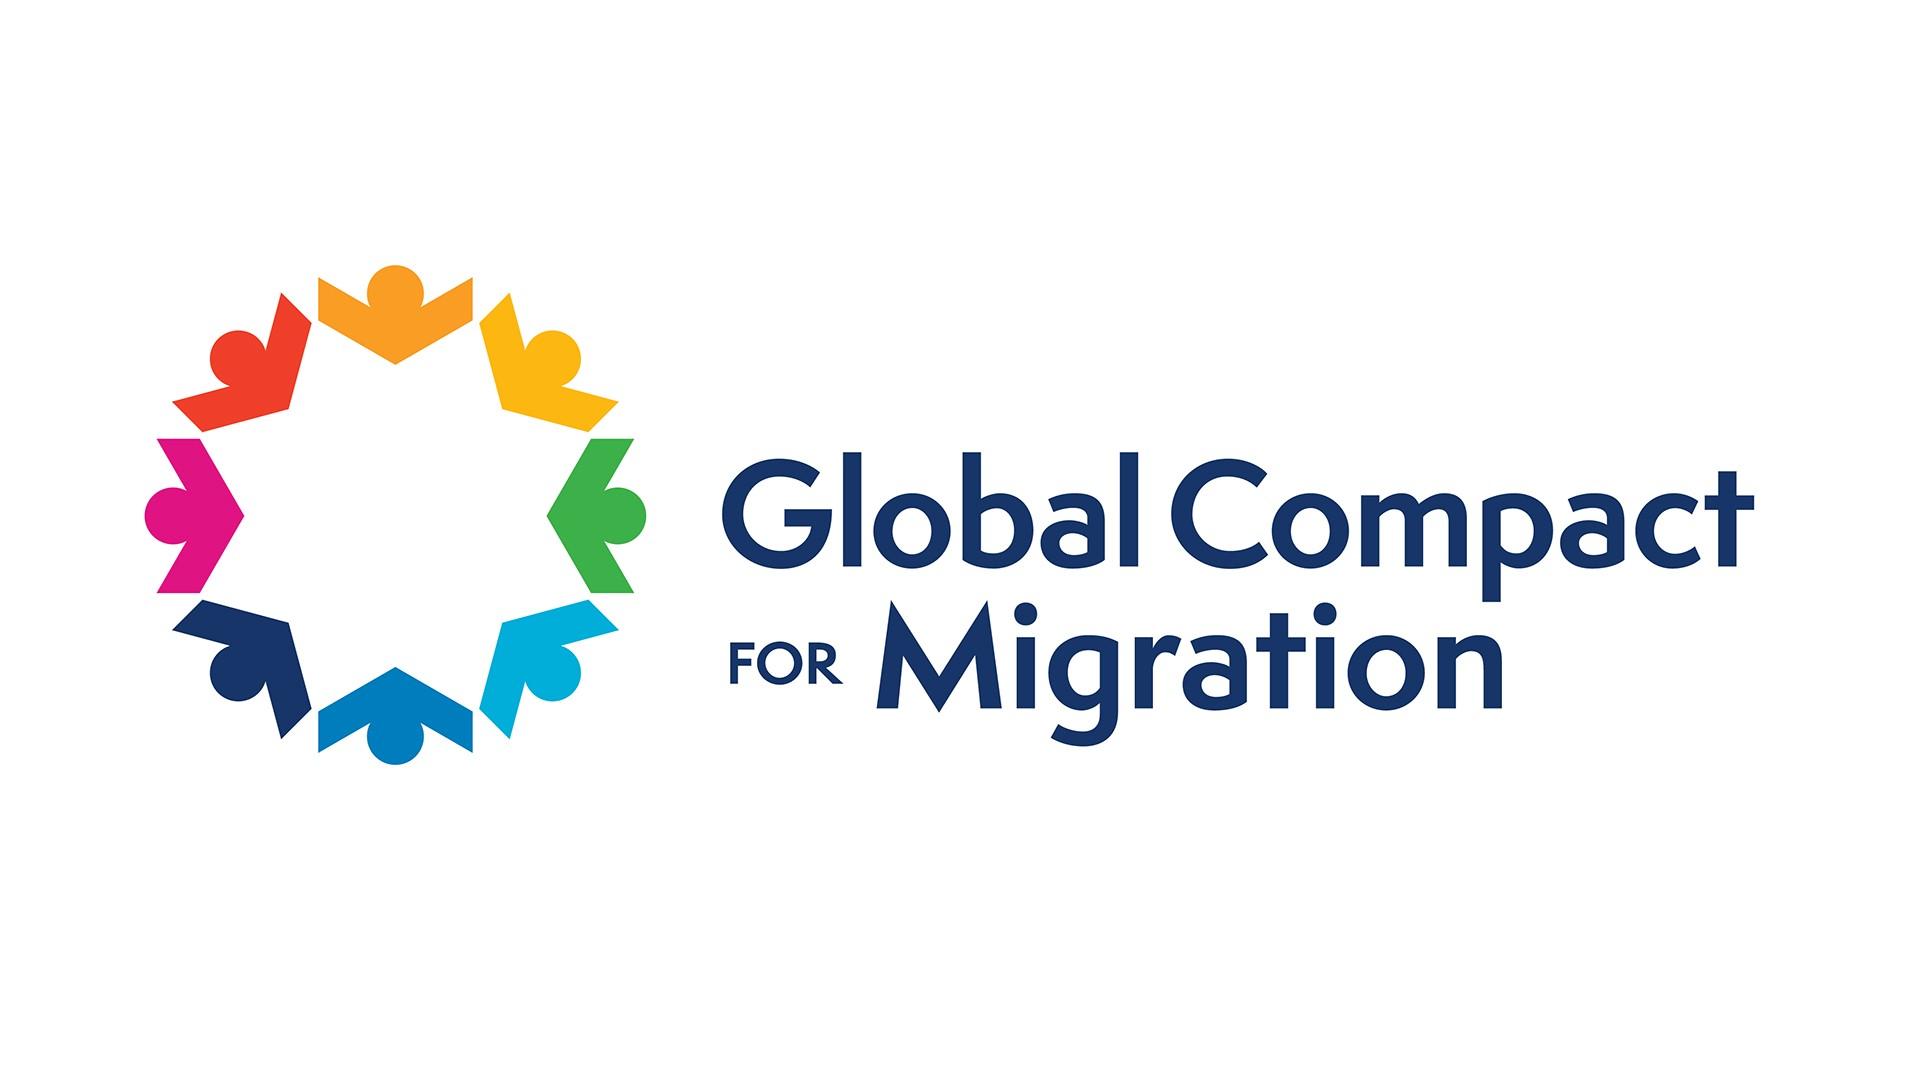 Migrazioni: l’Ordine di Malta al vertice di Marrakech per l’adozione del Global Compact. Il Gran Cancelliere: “Un traguardo importante per la comunità internazionale”